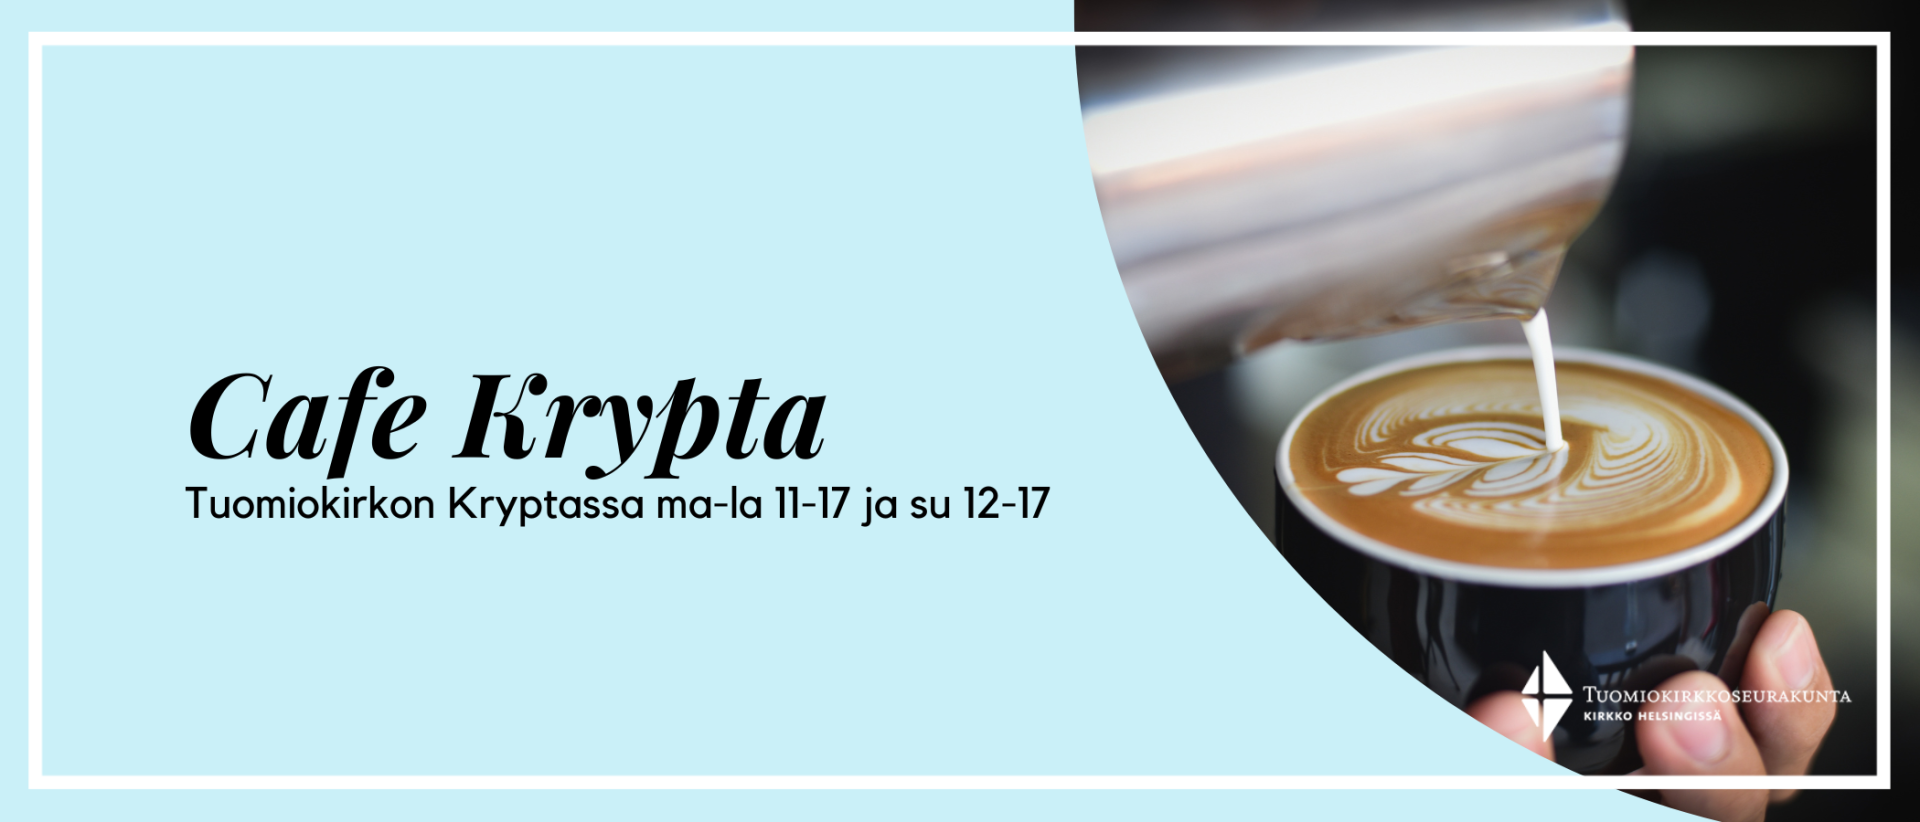 Cafe Krypta palvelee kesän ajan Tuomiokirkossa vierailijoita